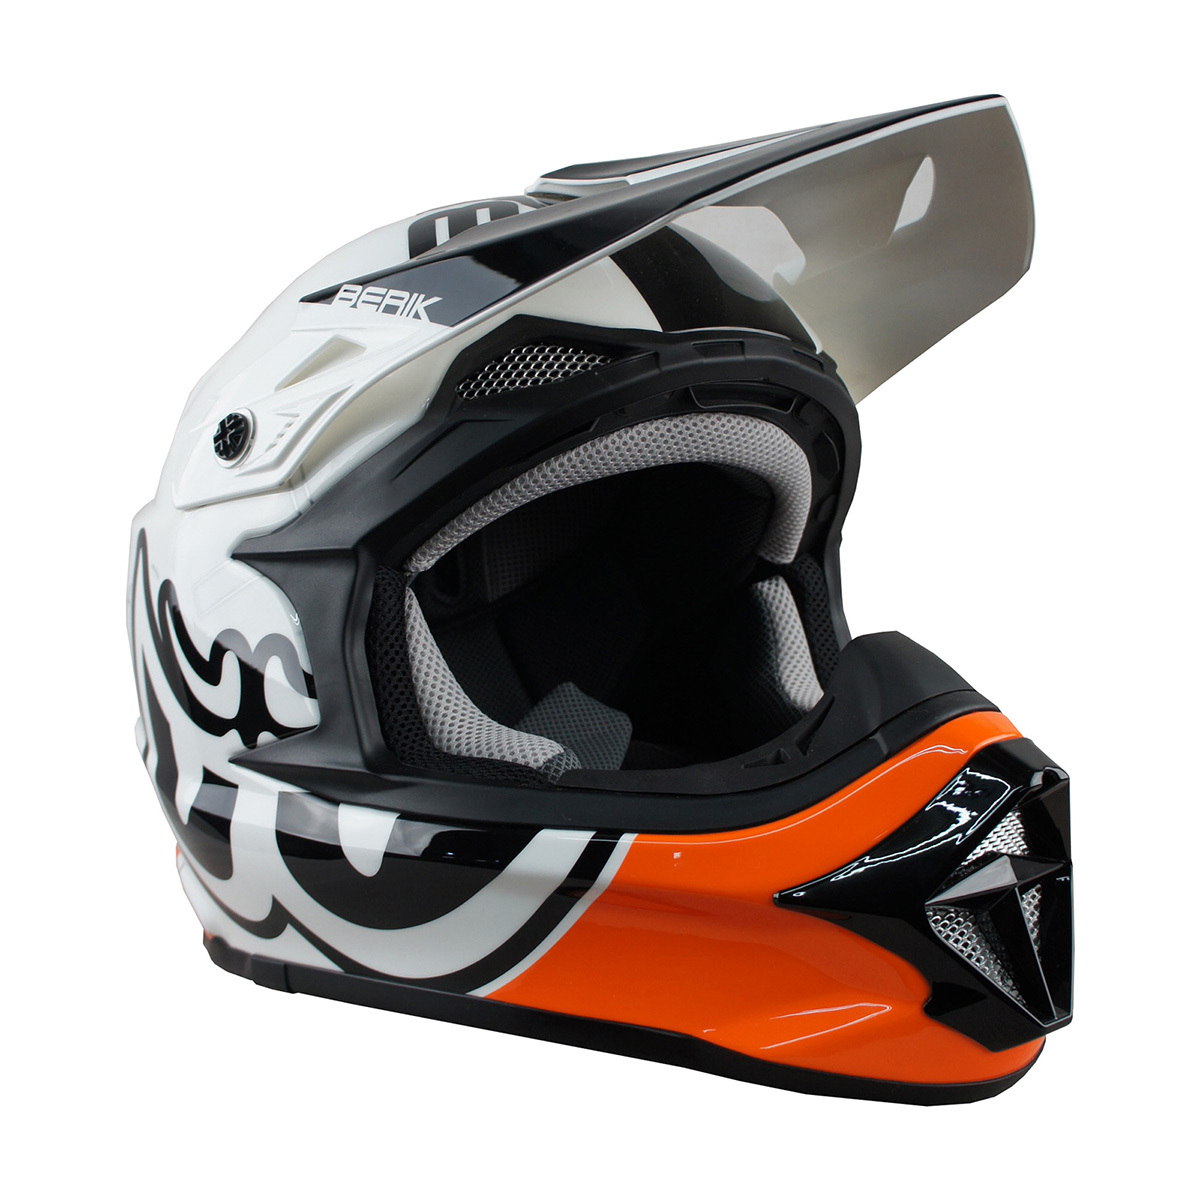 BERIK Berik off-road helmet HEL-239201-BK ORANGE M size bike wear motocross Enduro [ motorcycle supplies ]